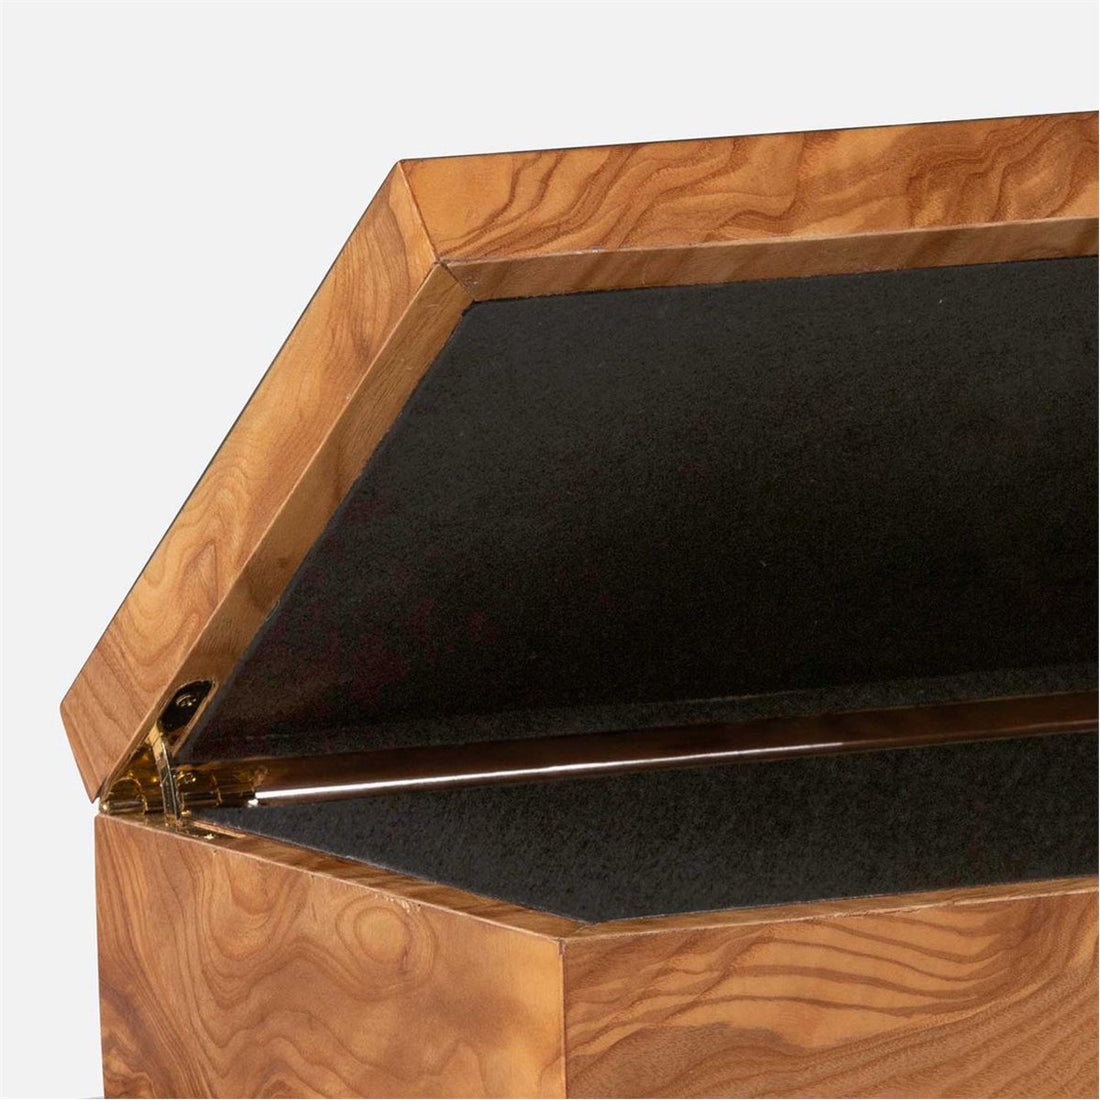 Made Goods Presley Veneer Box in Black Resin, 2-Piece Set